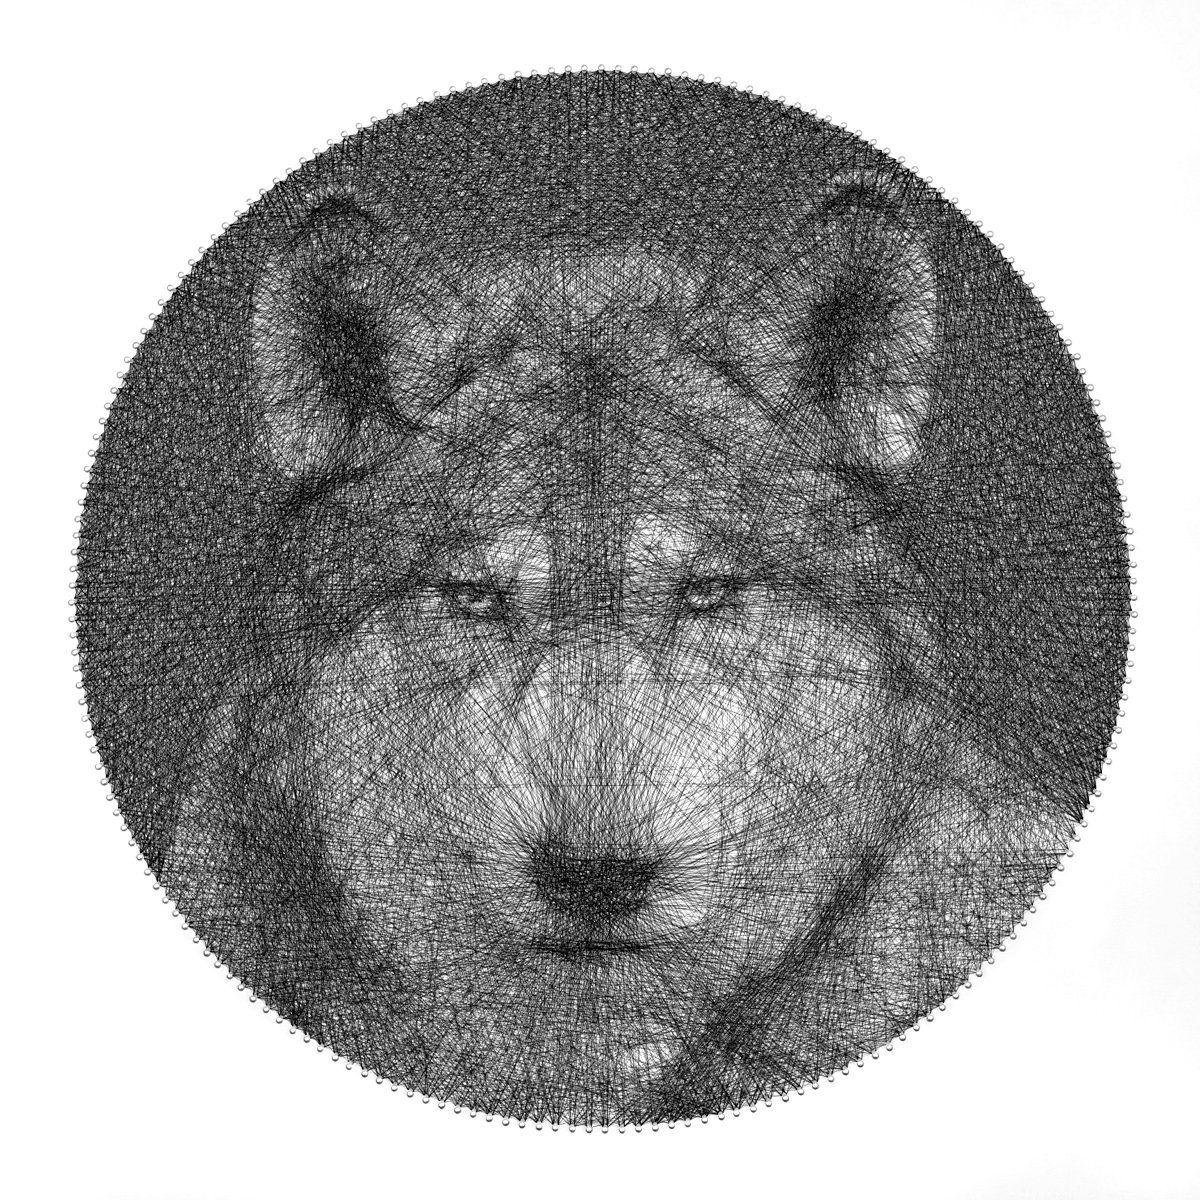 Wolf Totem Animal Sring Art by Andrey Saharov